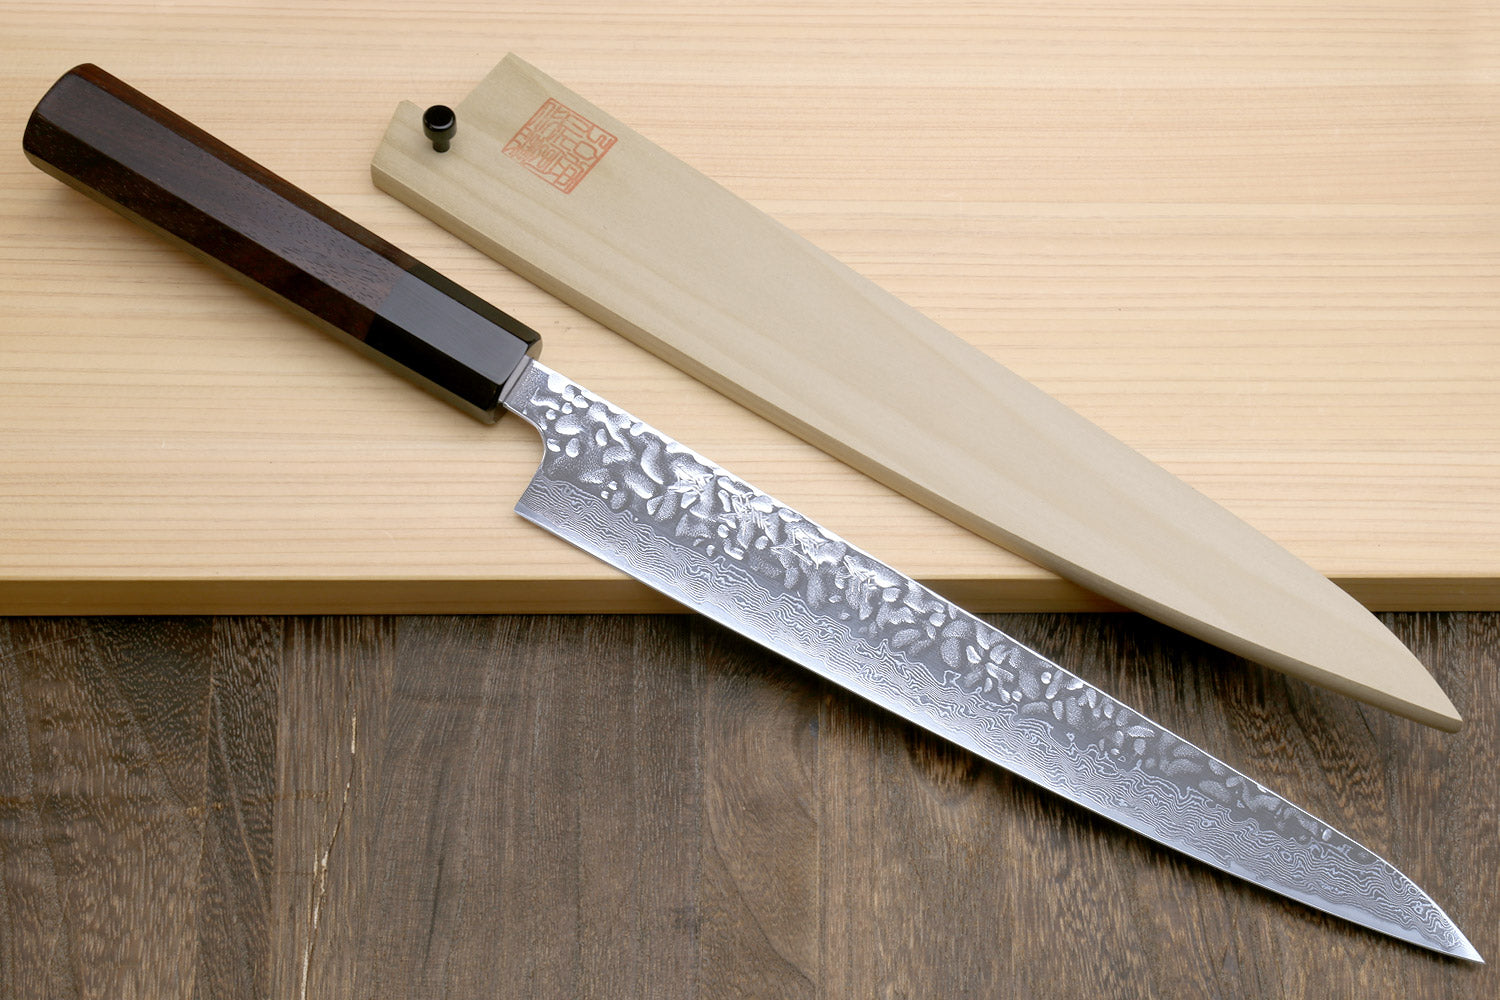 Yoshihiro Inox Stain-resistant Aus-10 Hammered Damascus Stainless Stee Yoshihiro Cutlery